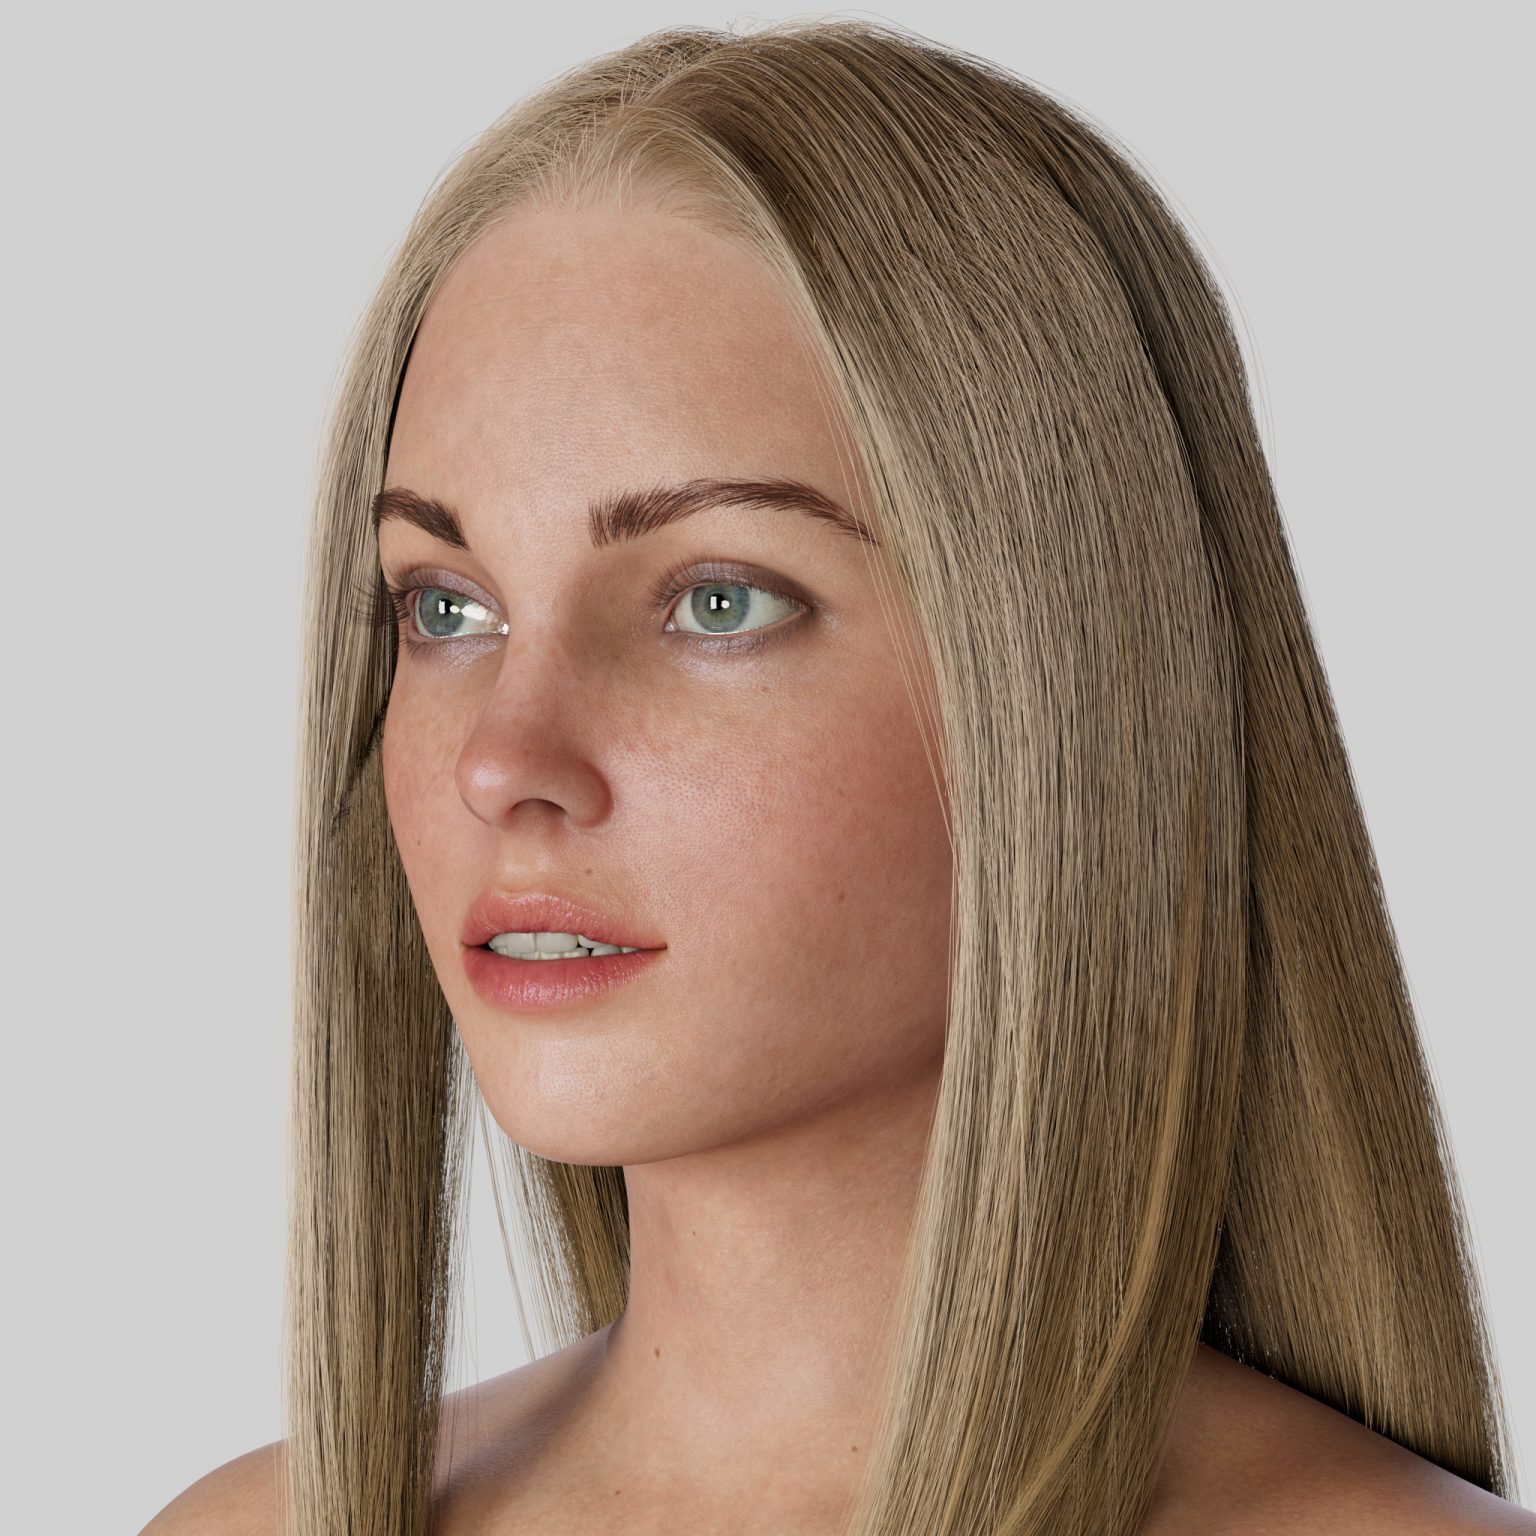 rigged blender 3d female models free download